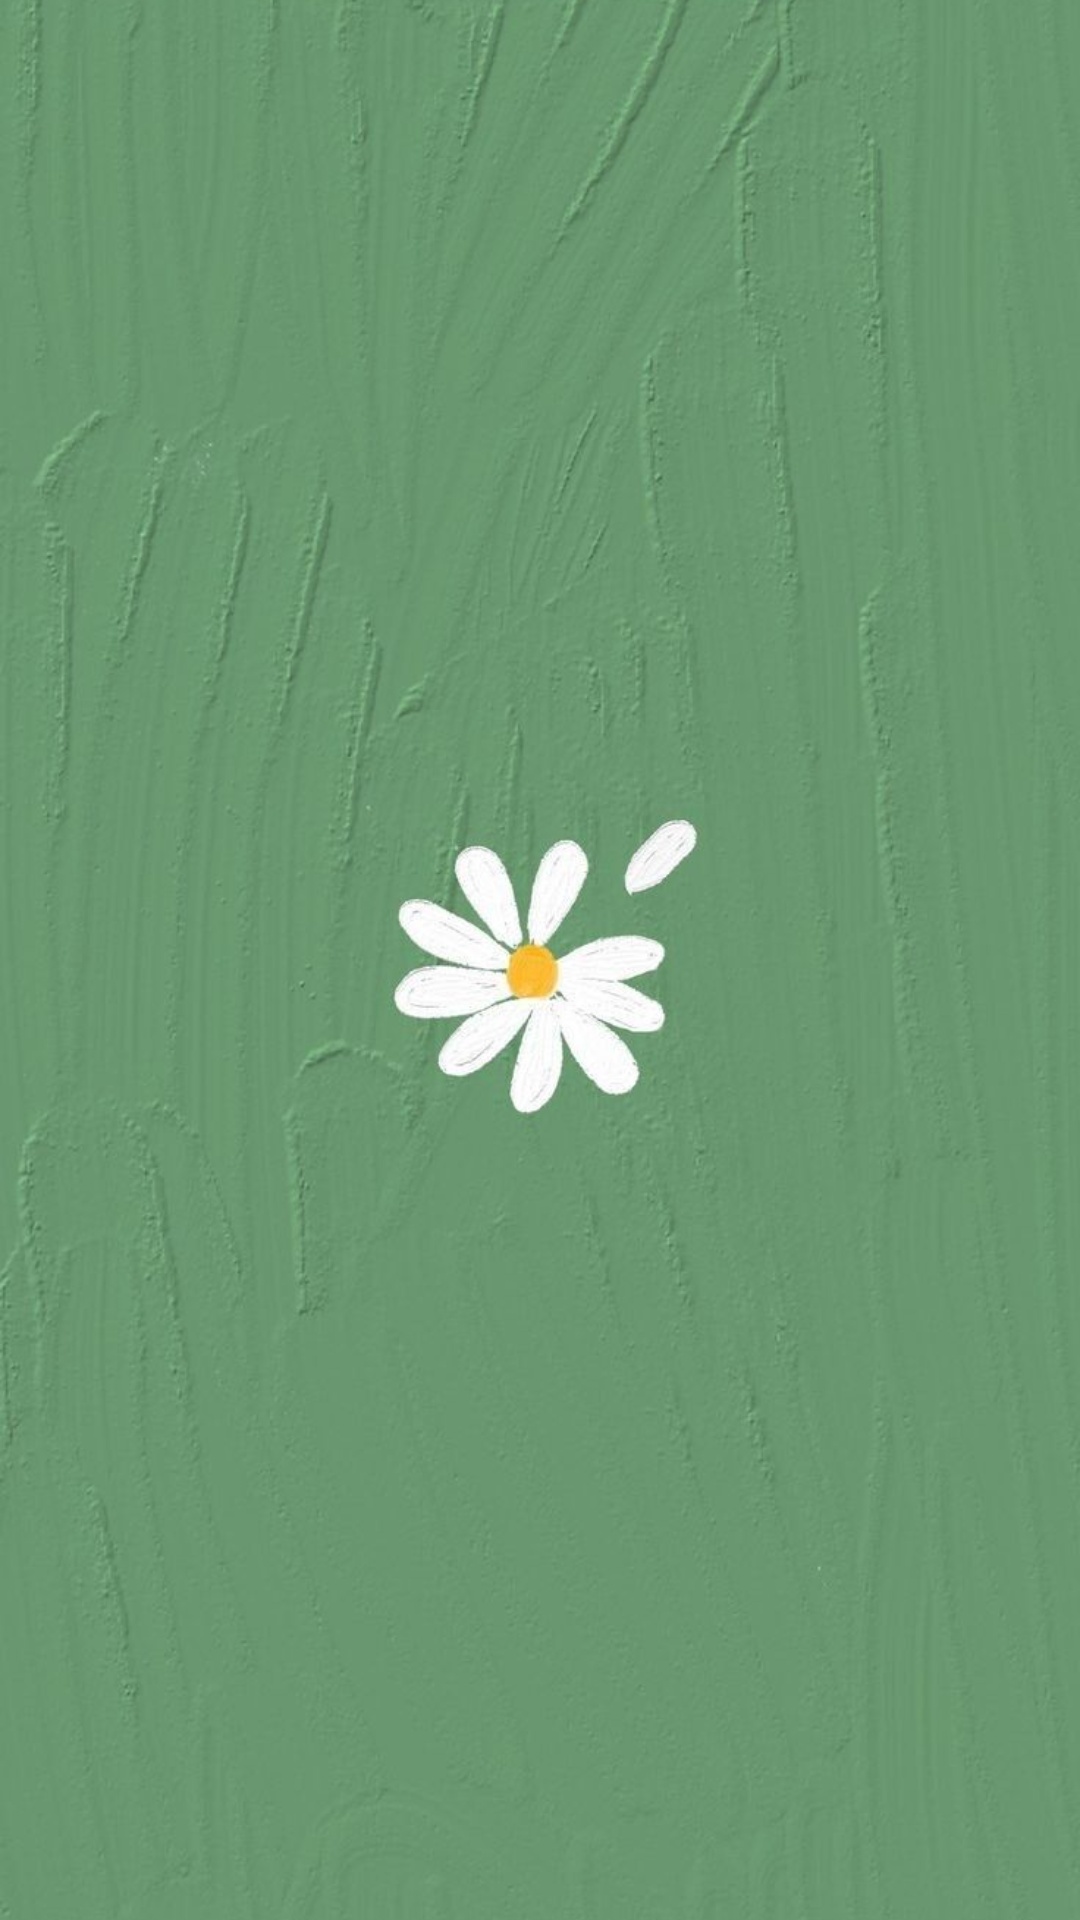 Green Minimalist iPhone Wallpaper